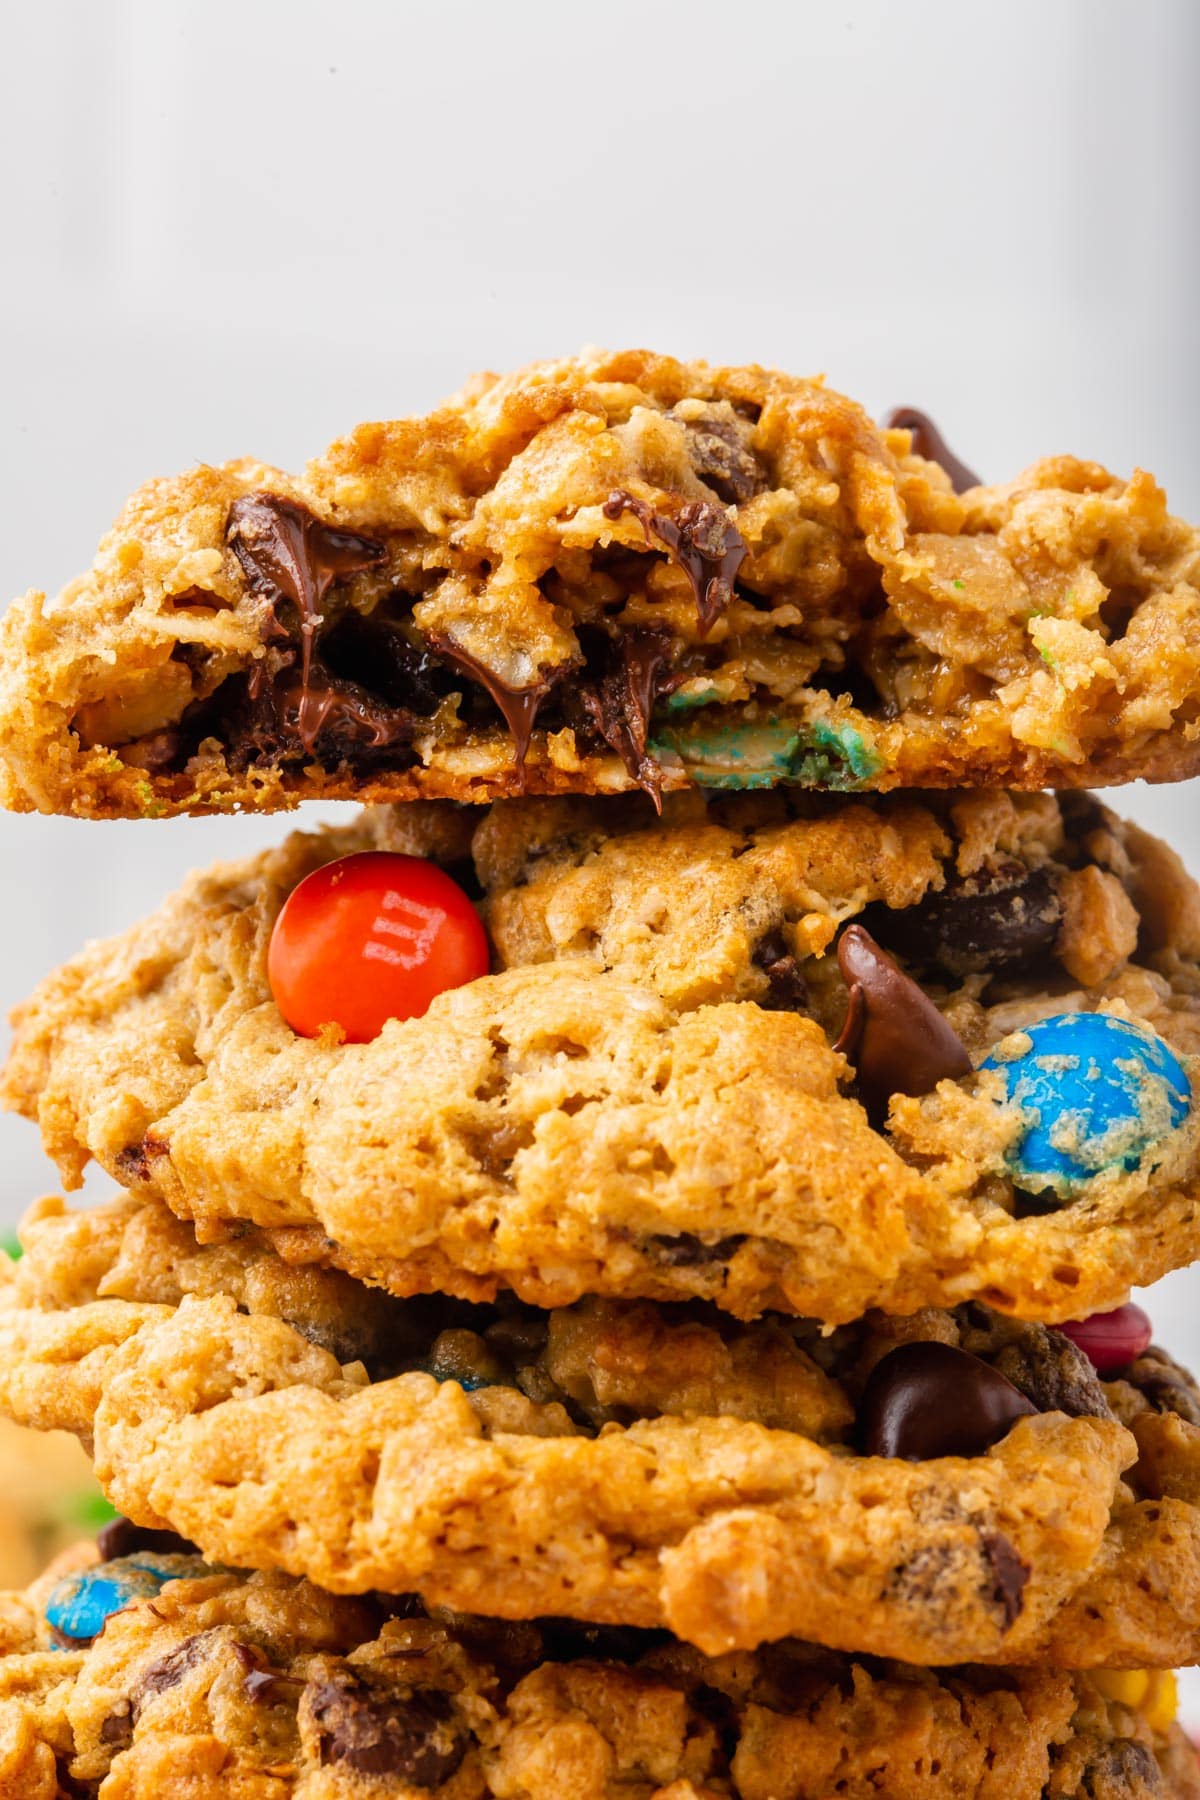 Stack of monster cookies with top cookie broken in half.